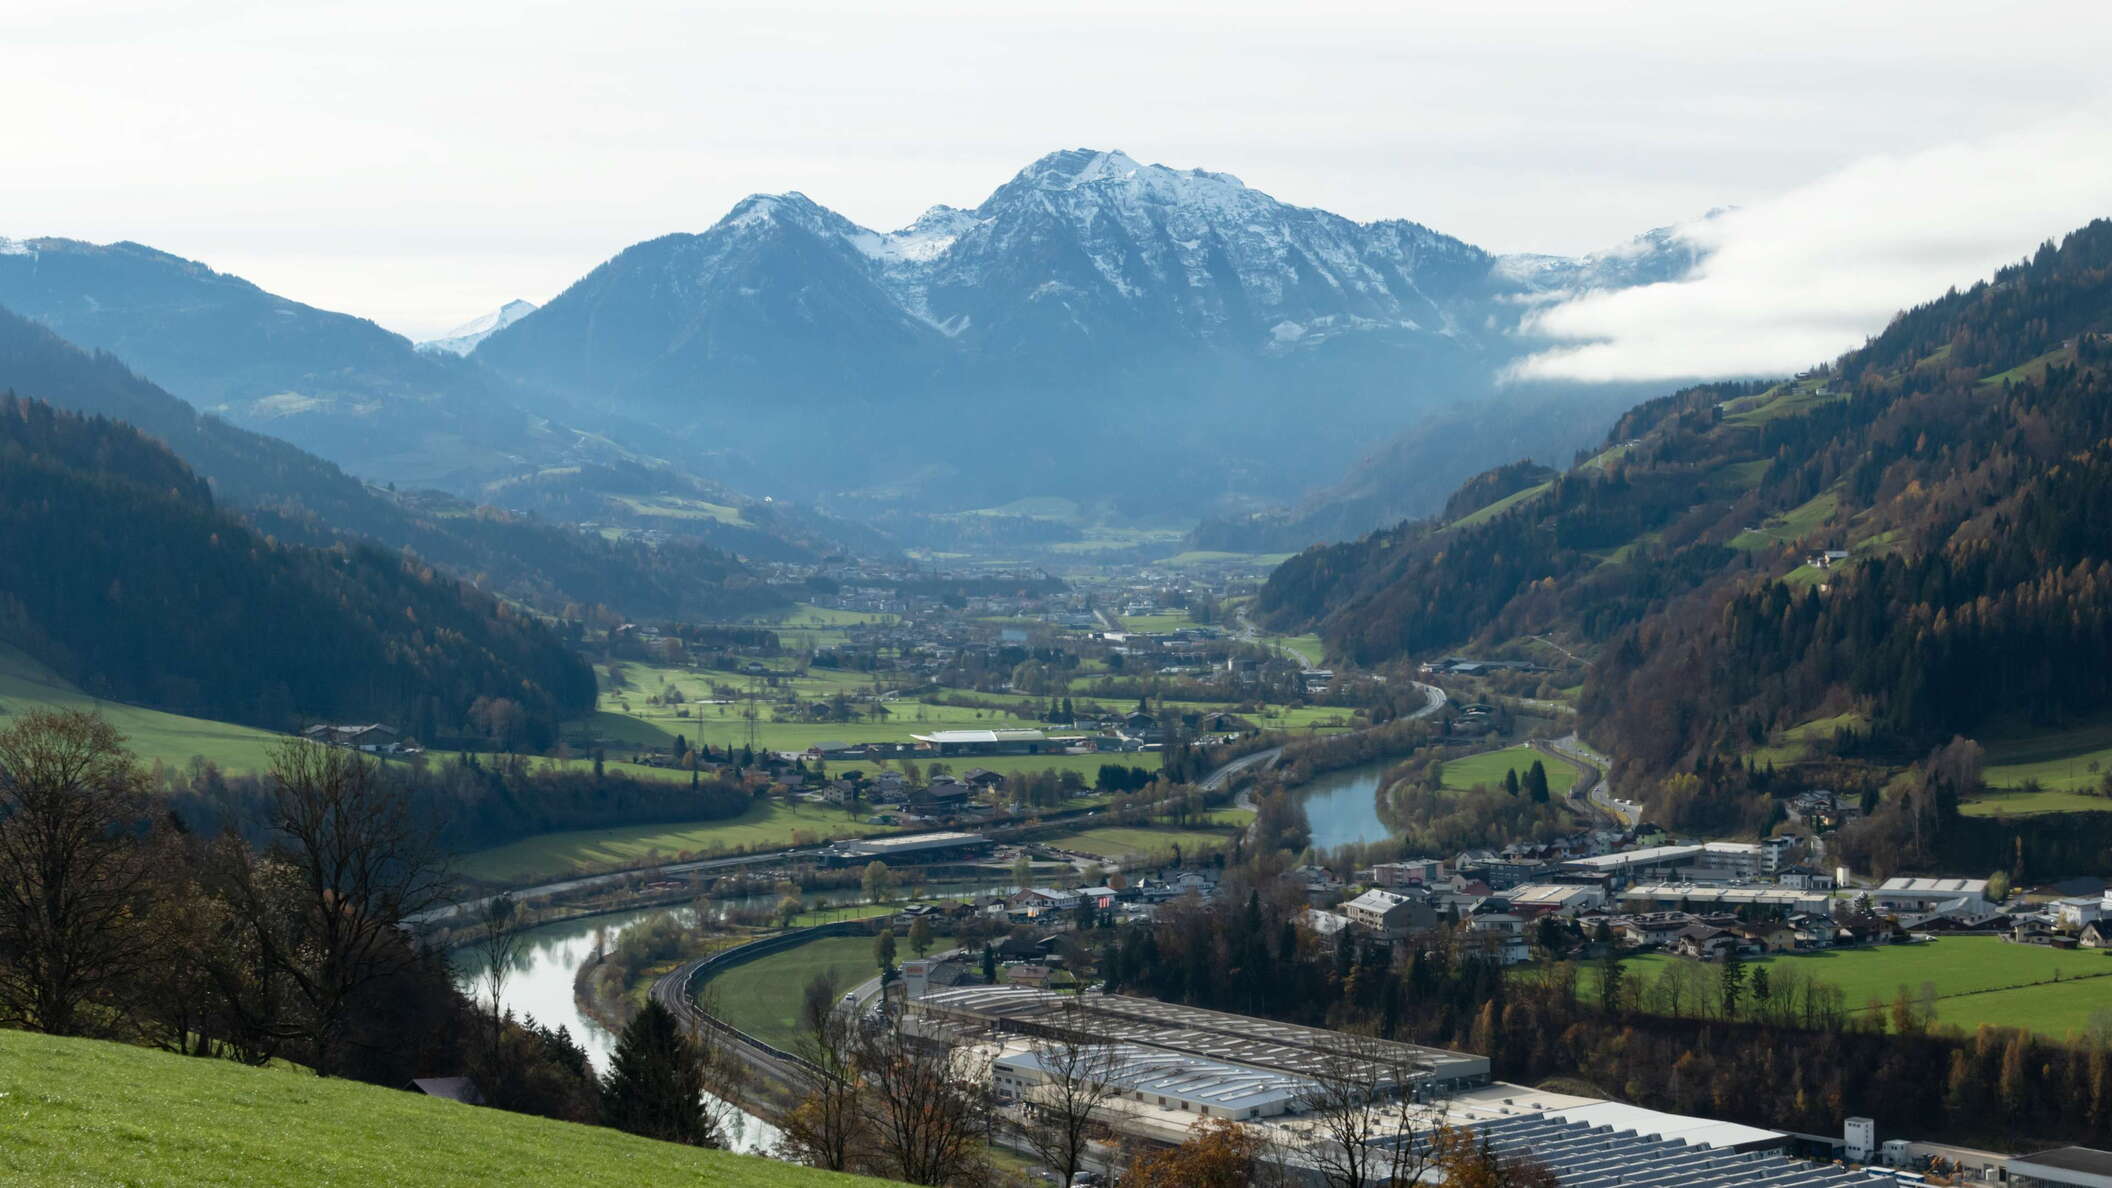 Salzach Valley with Höllwand